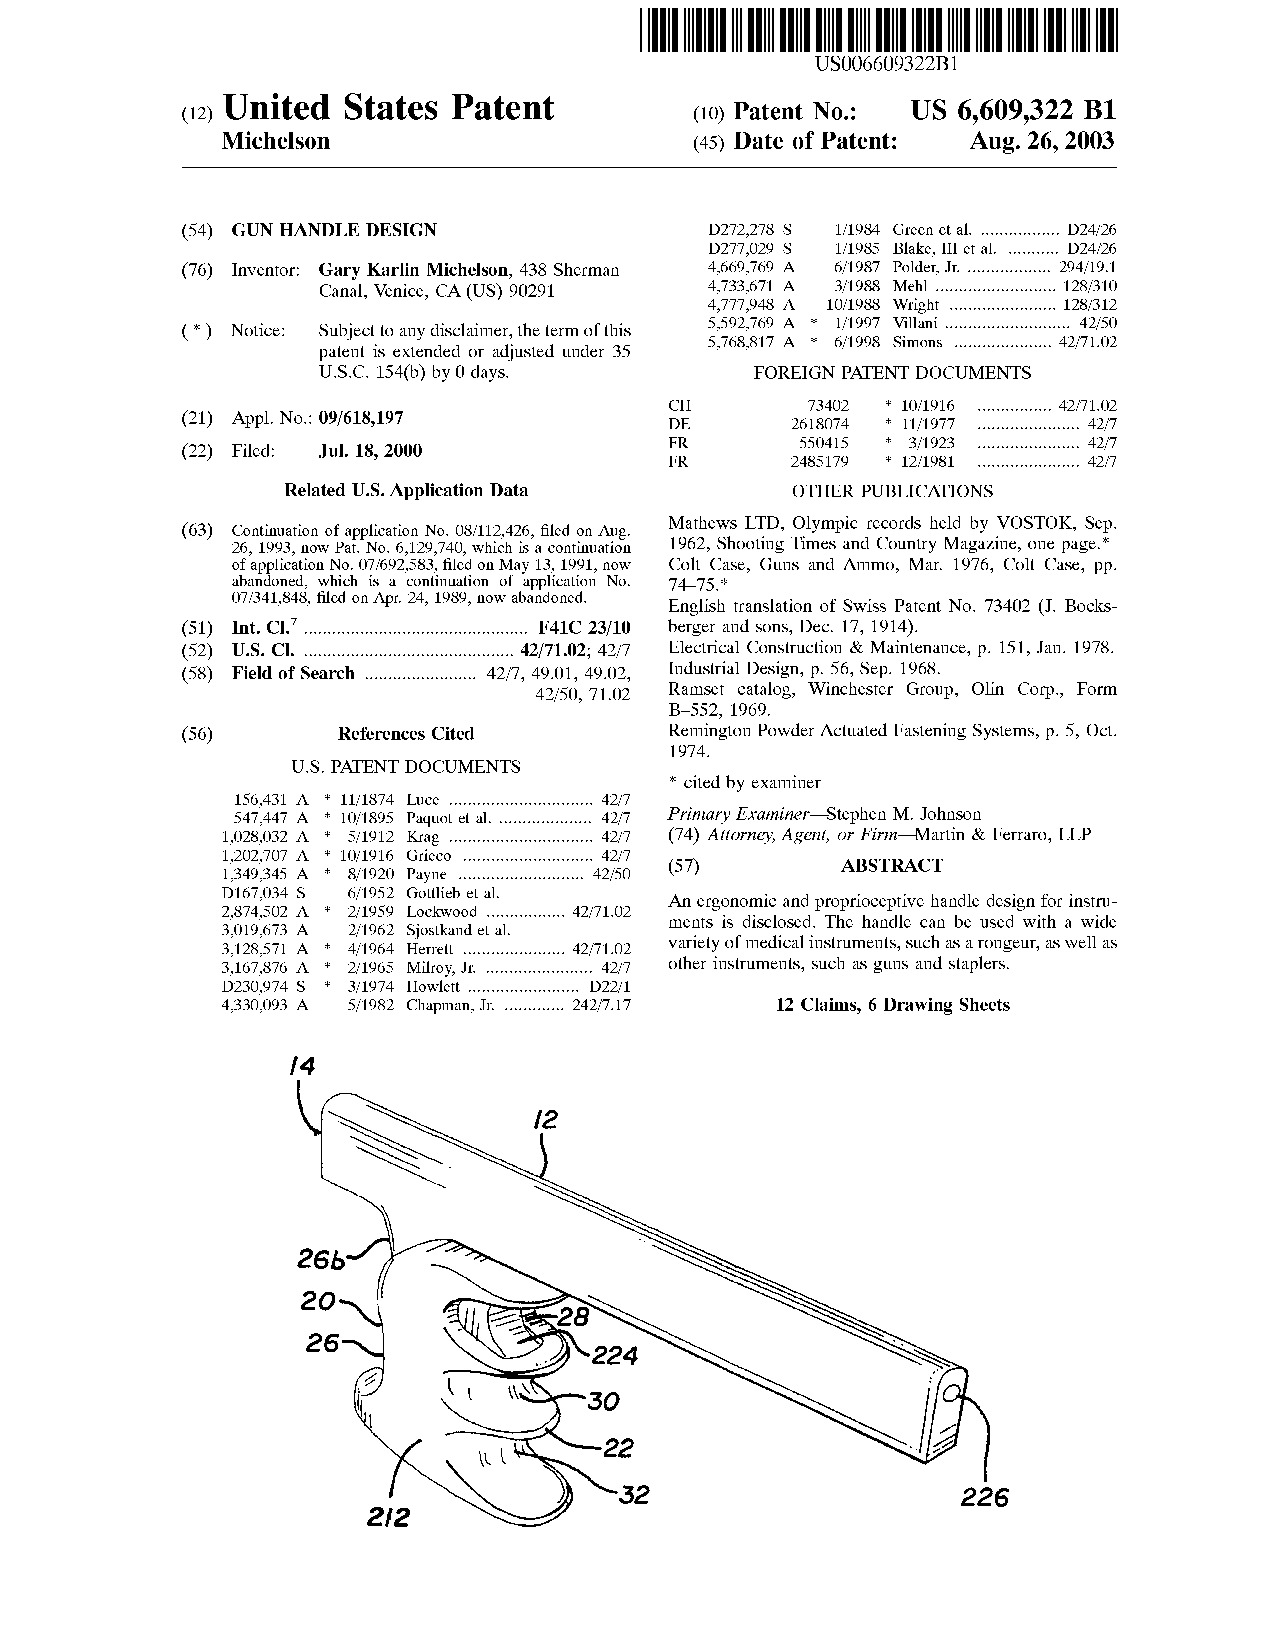 Gun handle design - Patent 6,609,322